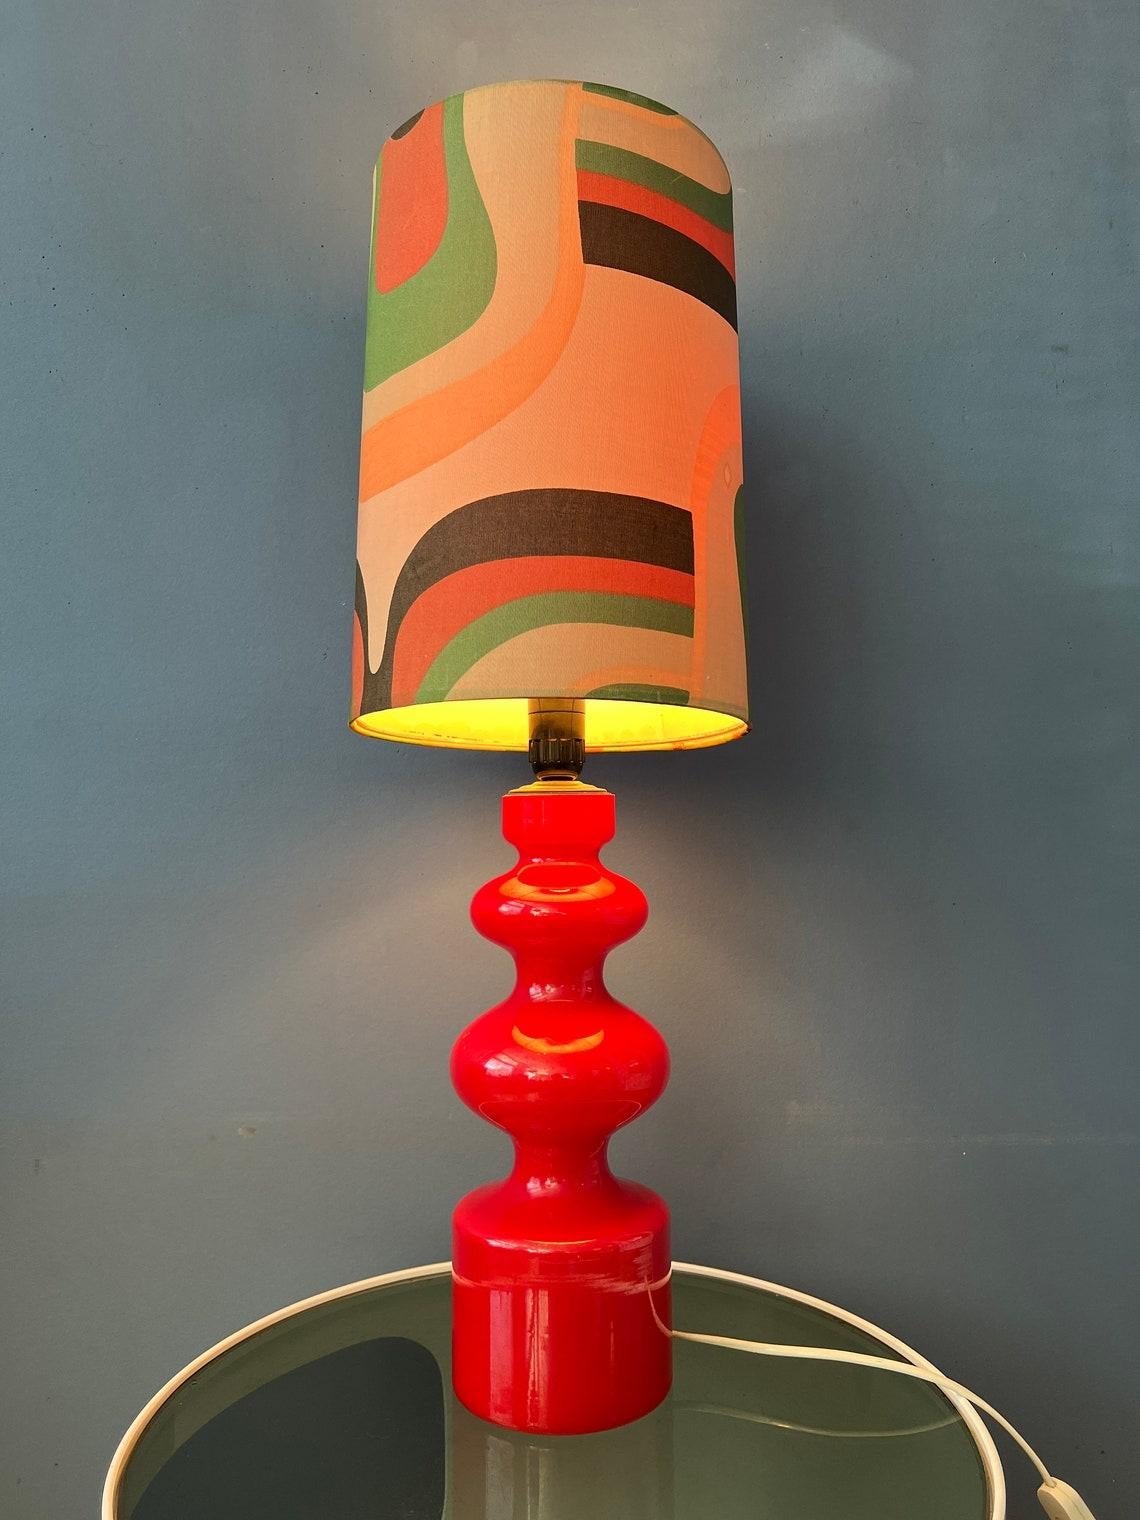 Lampe de table rouge west germany space age avec base en verre et abat-jour en textile. La lampe nécessite une ampoule E27/26 et dispose actuellement d'une fiche de connexion à l'UE.

Informations complémentaires :
MATERIAL : Céramique, lin
Période